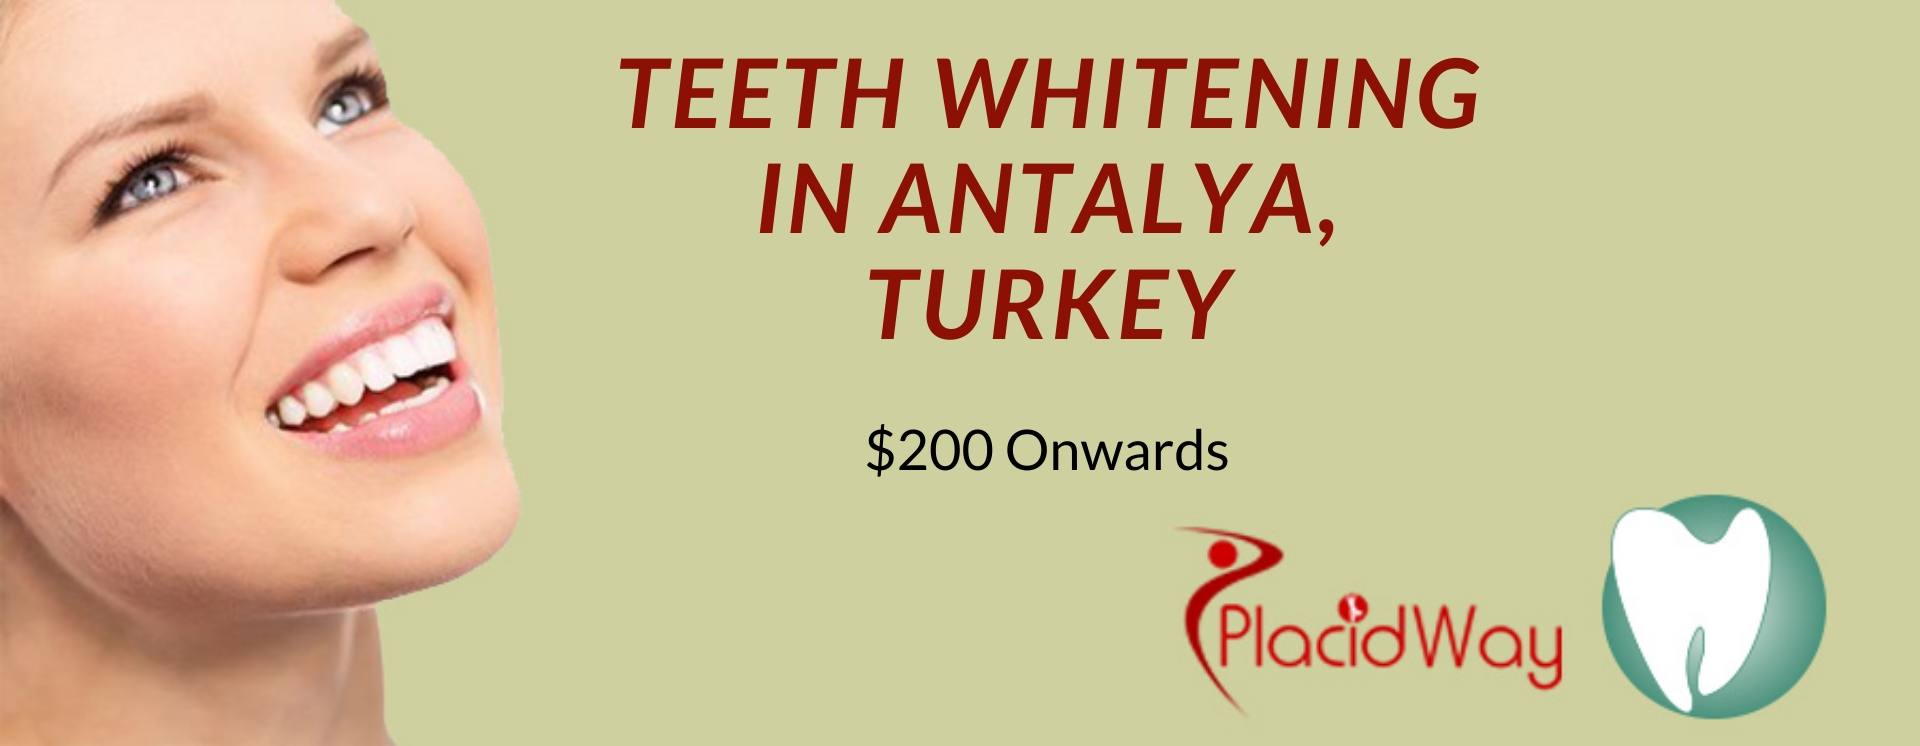 Teeth Whitening in Antalya, Turkey